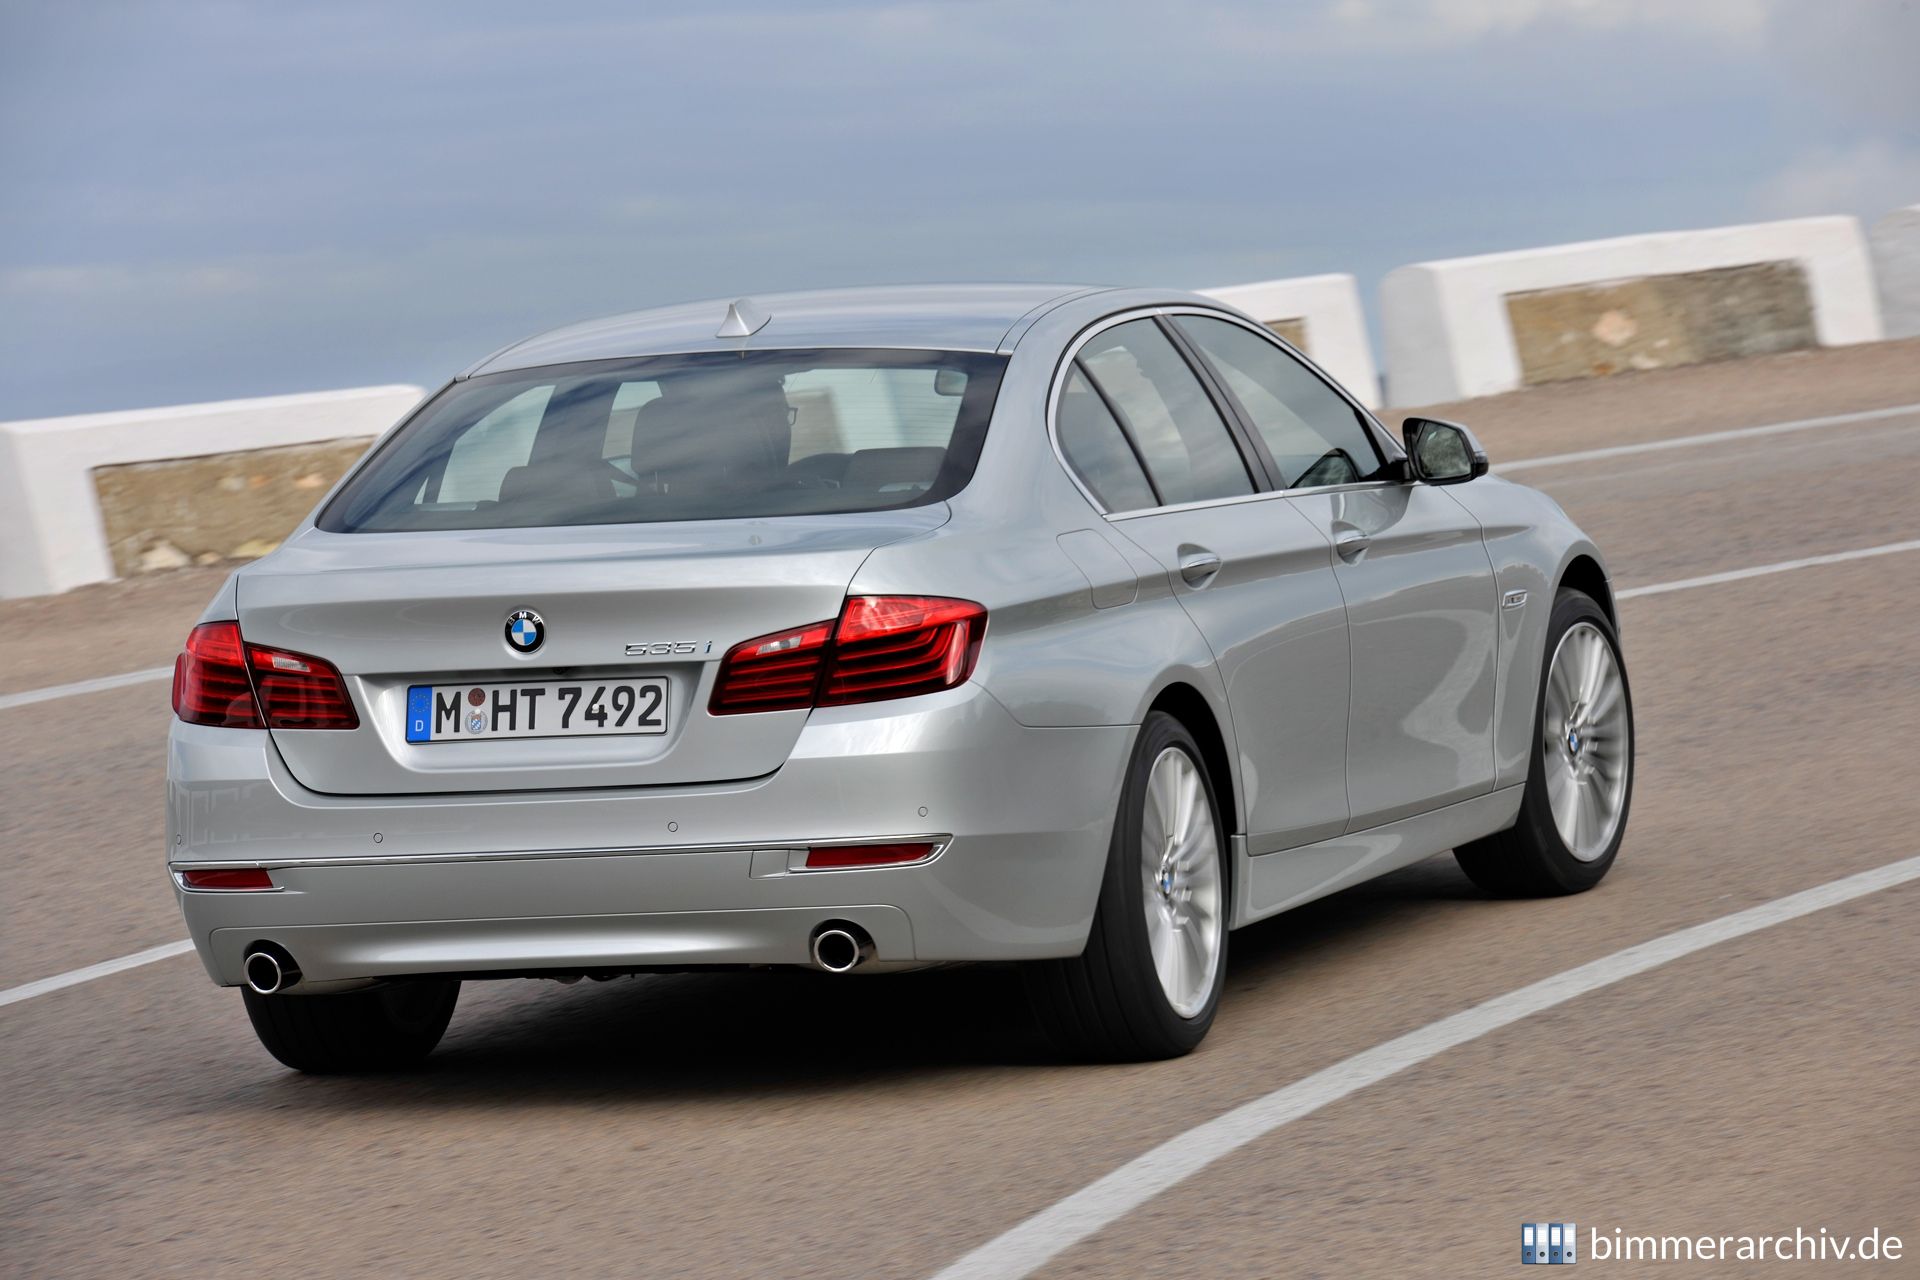 BMW 535i Luxury Line - Sedan